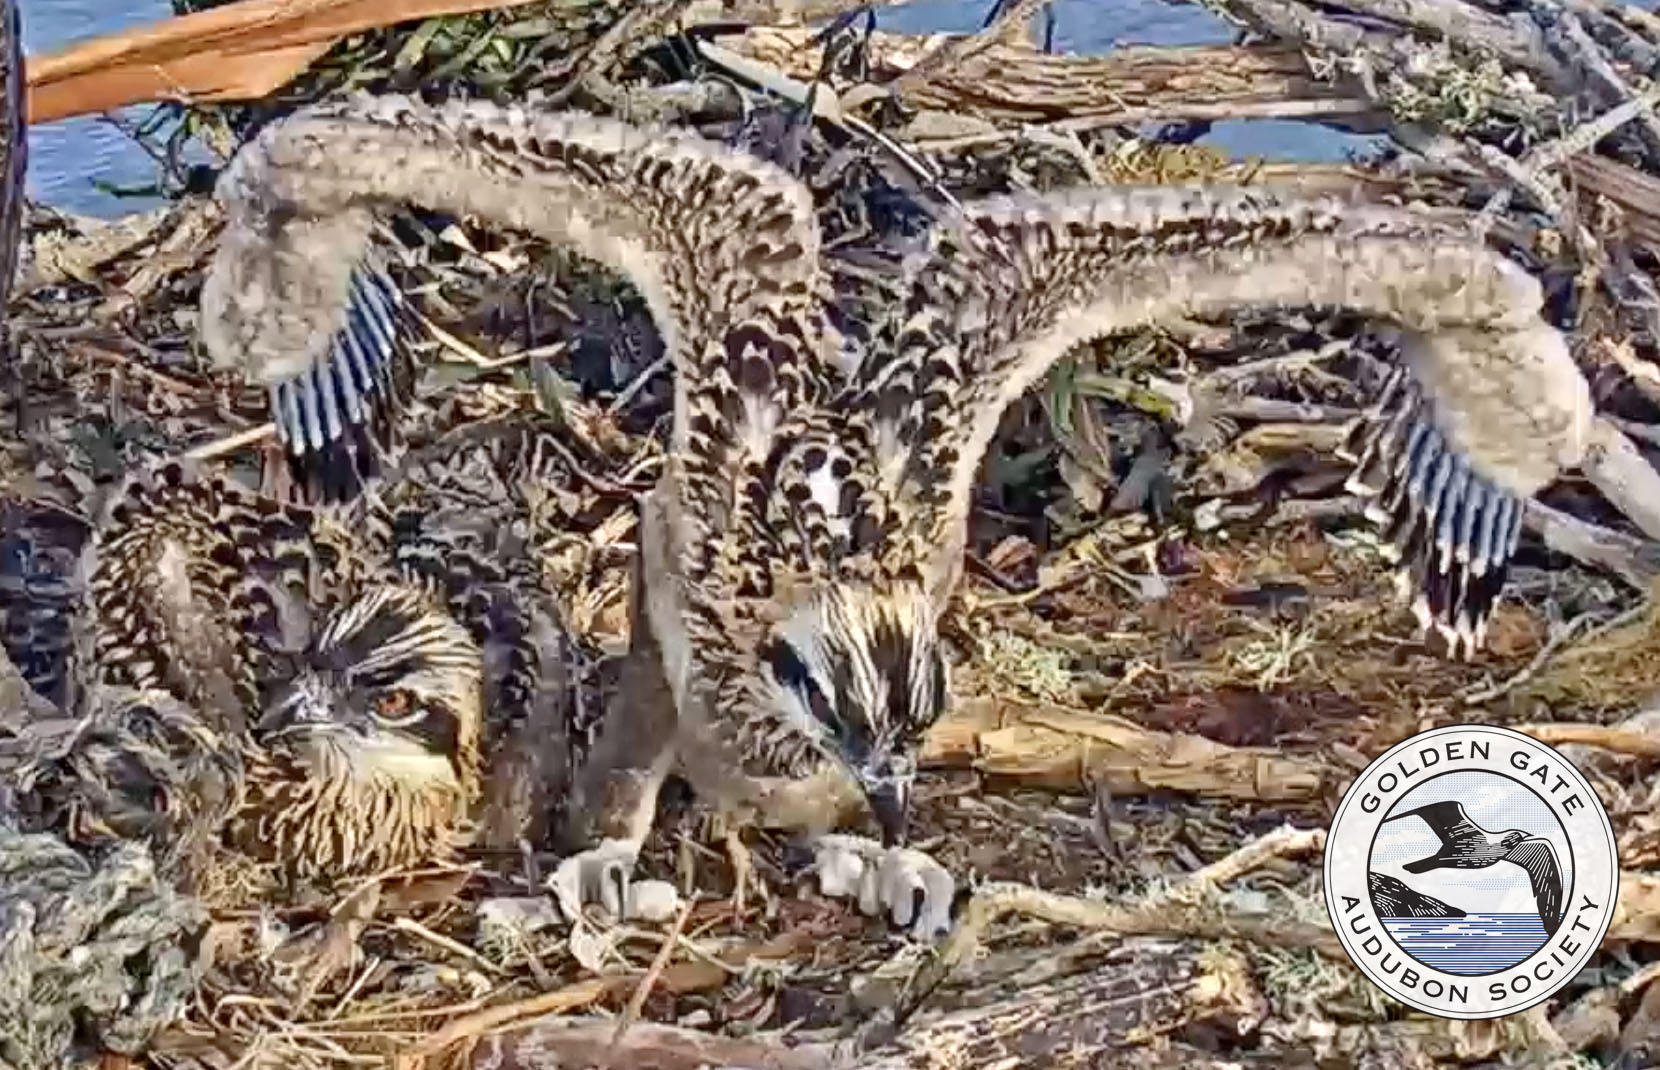 Five-week-old Osprey chicks